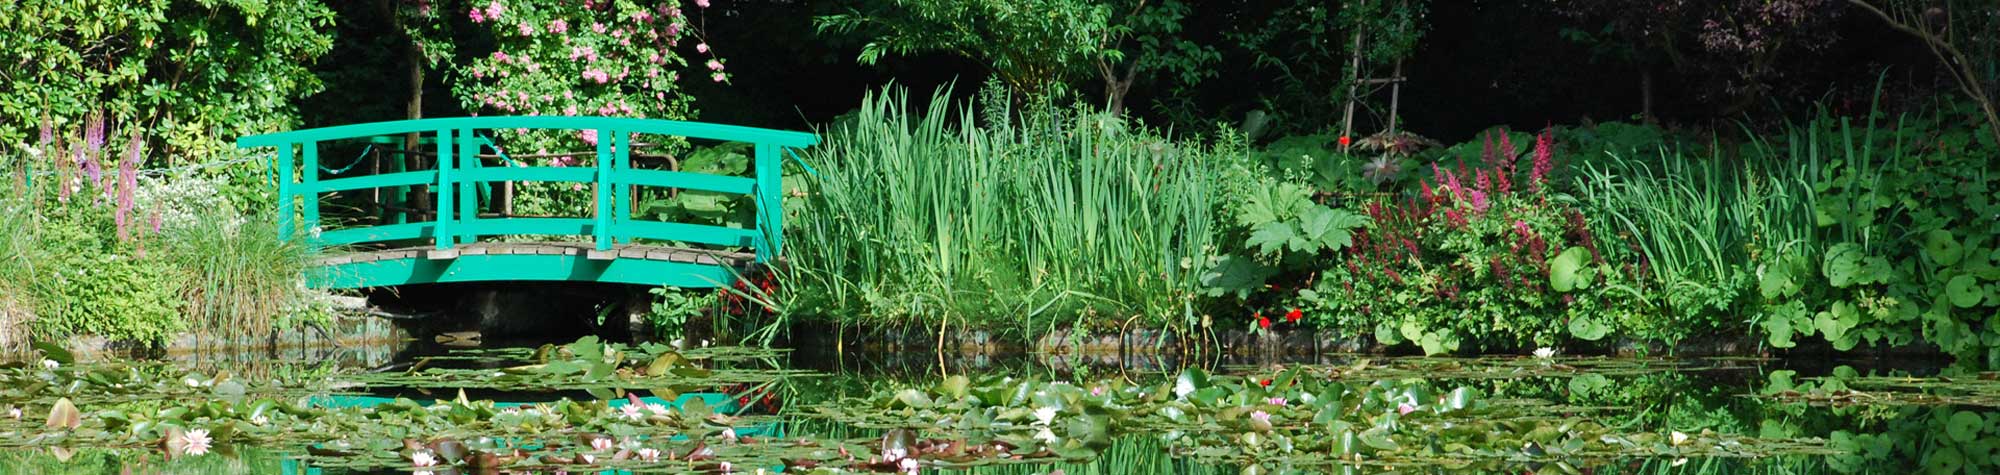 Maison et Jardin de Claude Monet - Giverny